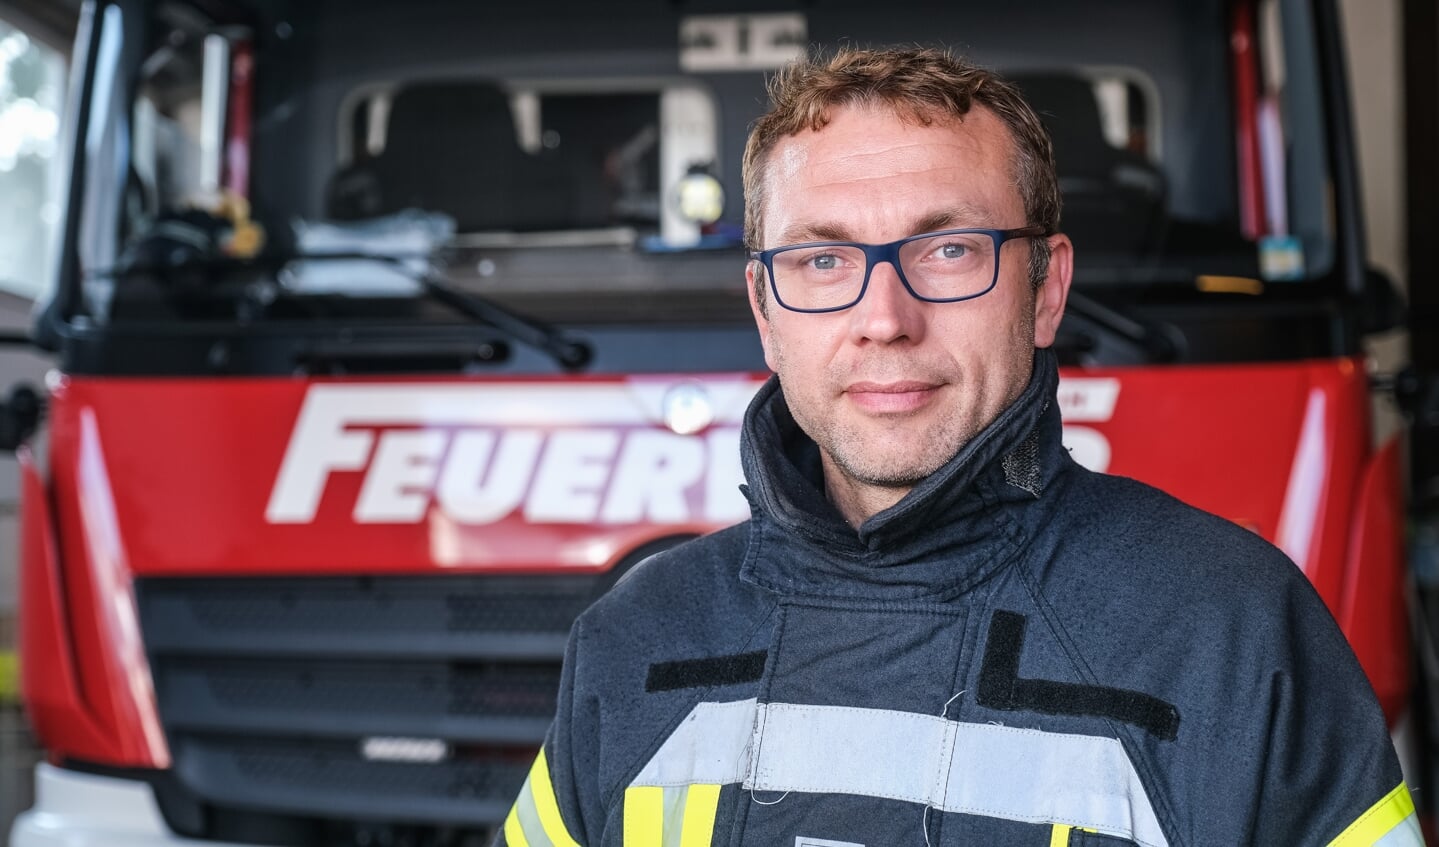 Mario Quade, brandværnschef for det frivillige brandværn i Jørgensby, var tilfreds med at høre forslagene og diskussionen i planlægningsudvalget. Men nogle ting er stadig uklare for ham. Arkivfoto: